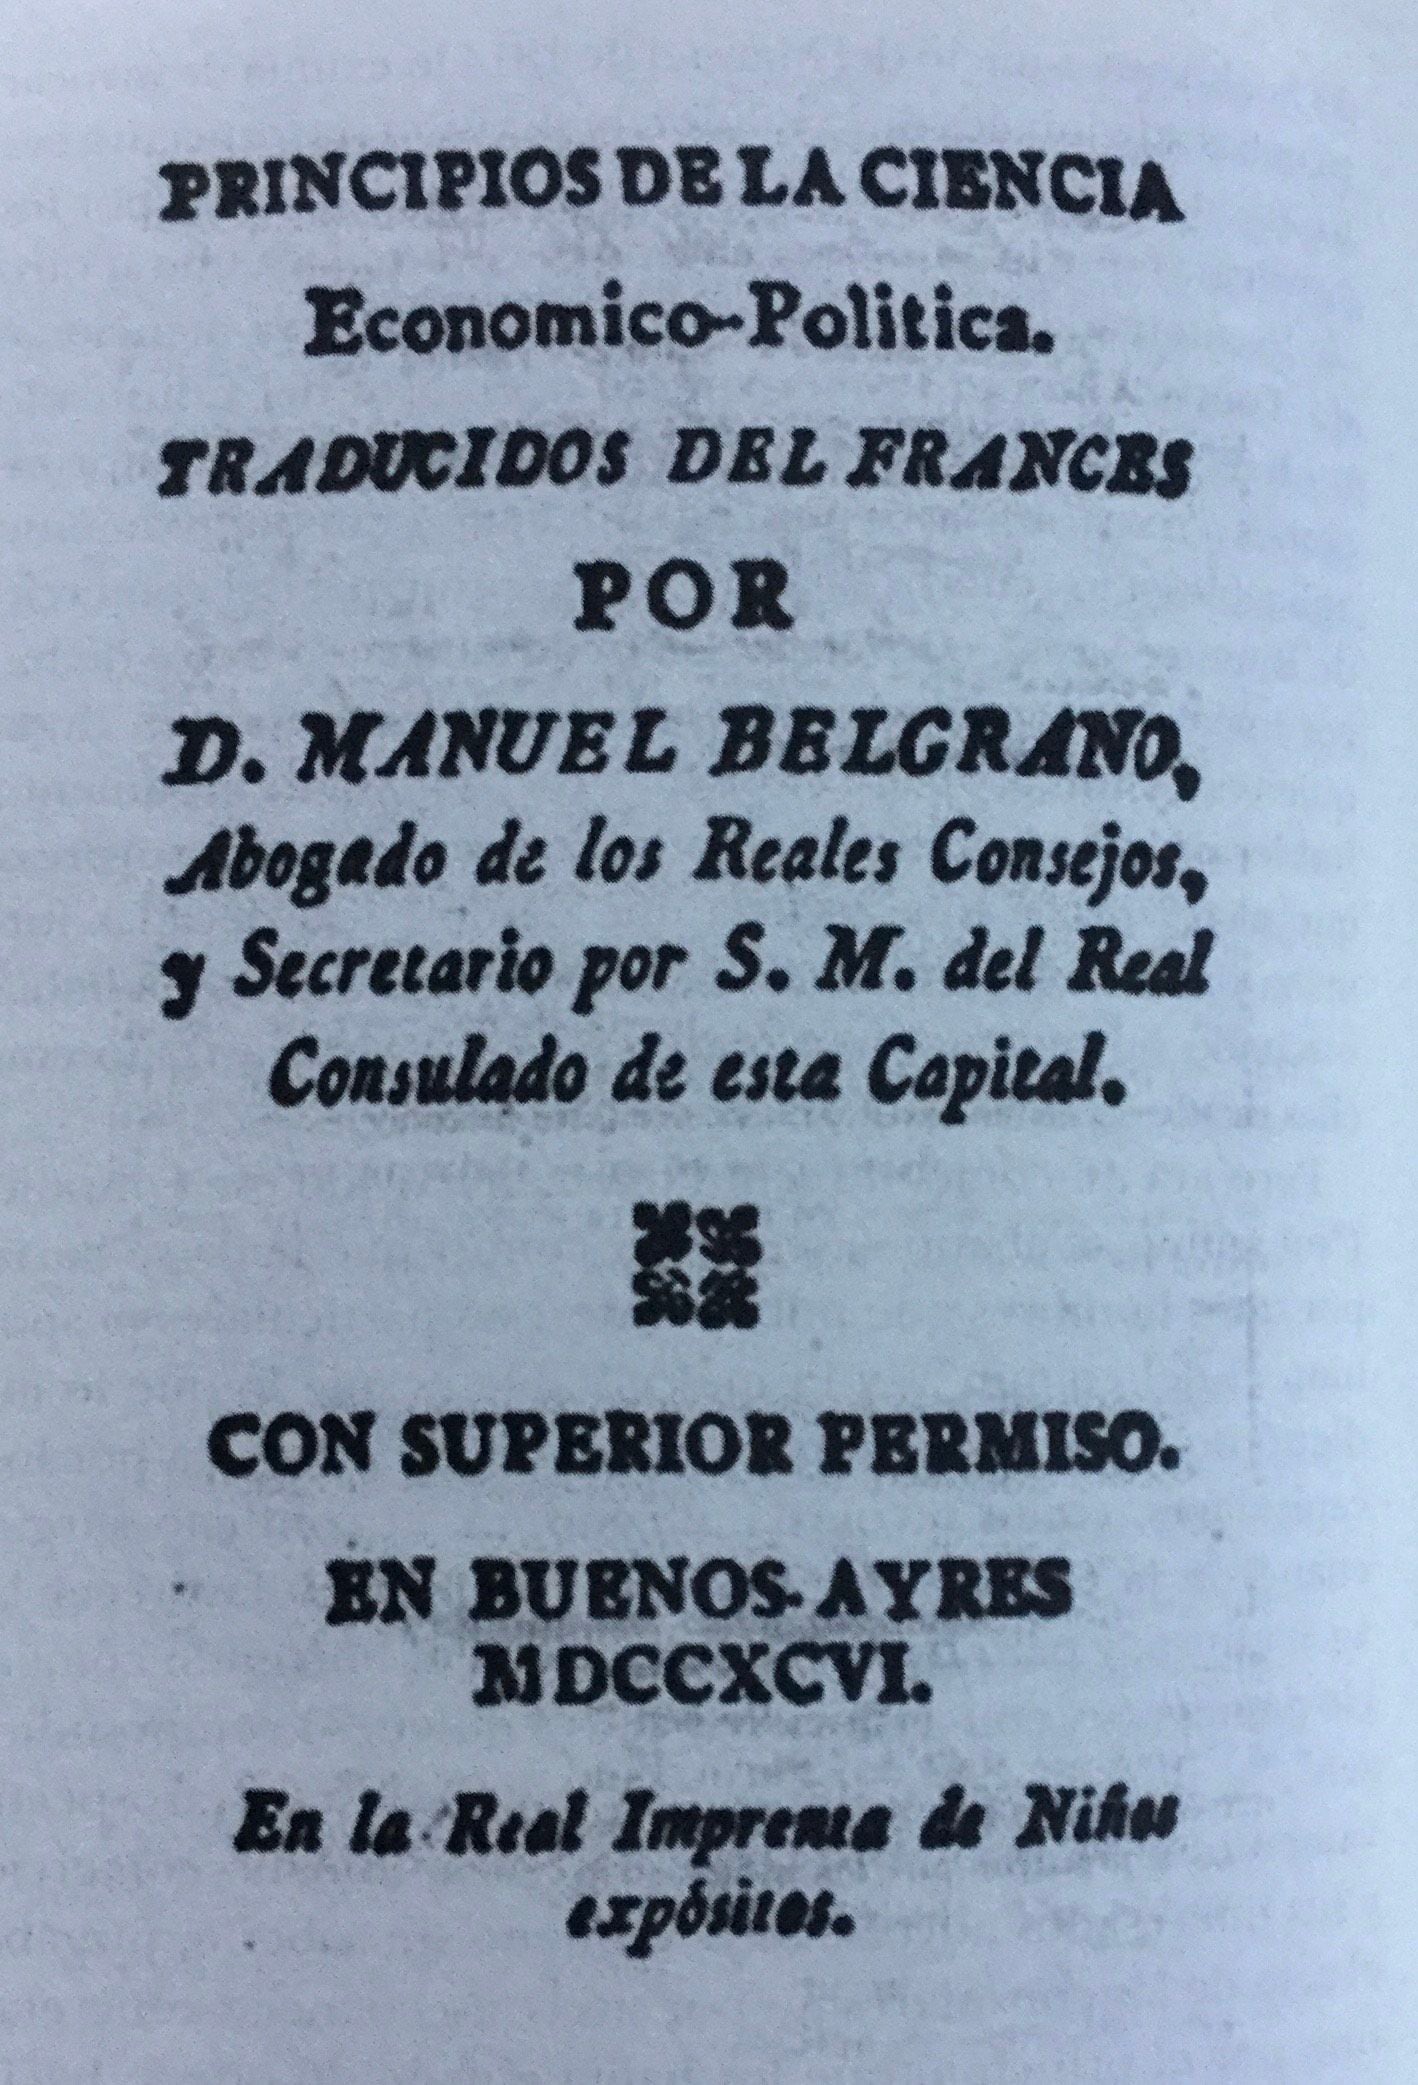 Una de las traducciones que hizo Belgrano, y que fue publicada por la imprenta de Niños Expósitos.